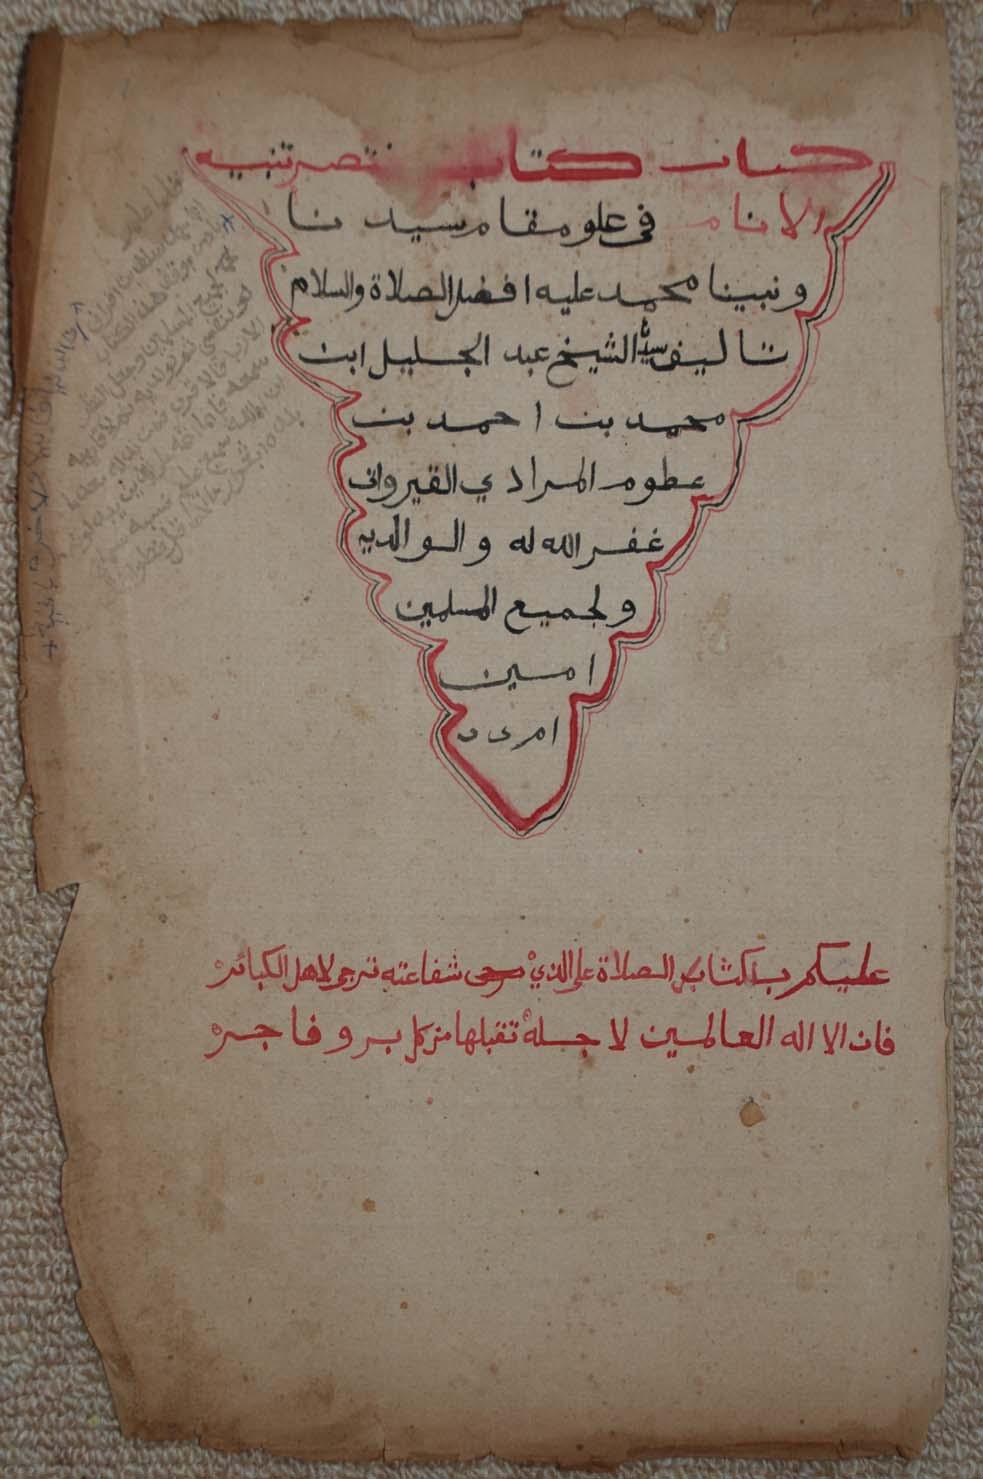 prayer book by ʿAbd al-ǧalīl b. Muḥammad b. Aḥmad b. ʿAẓẓūm al-murādī al-qayrawānī.